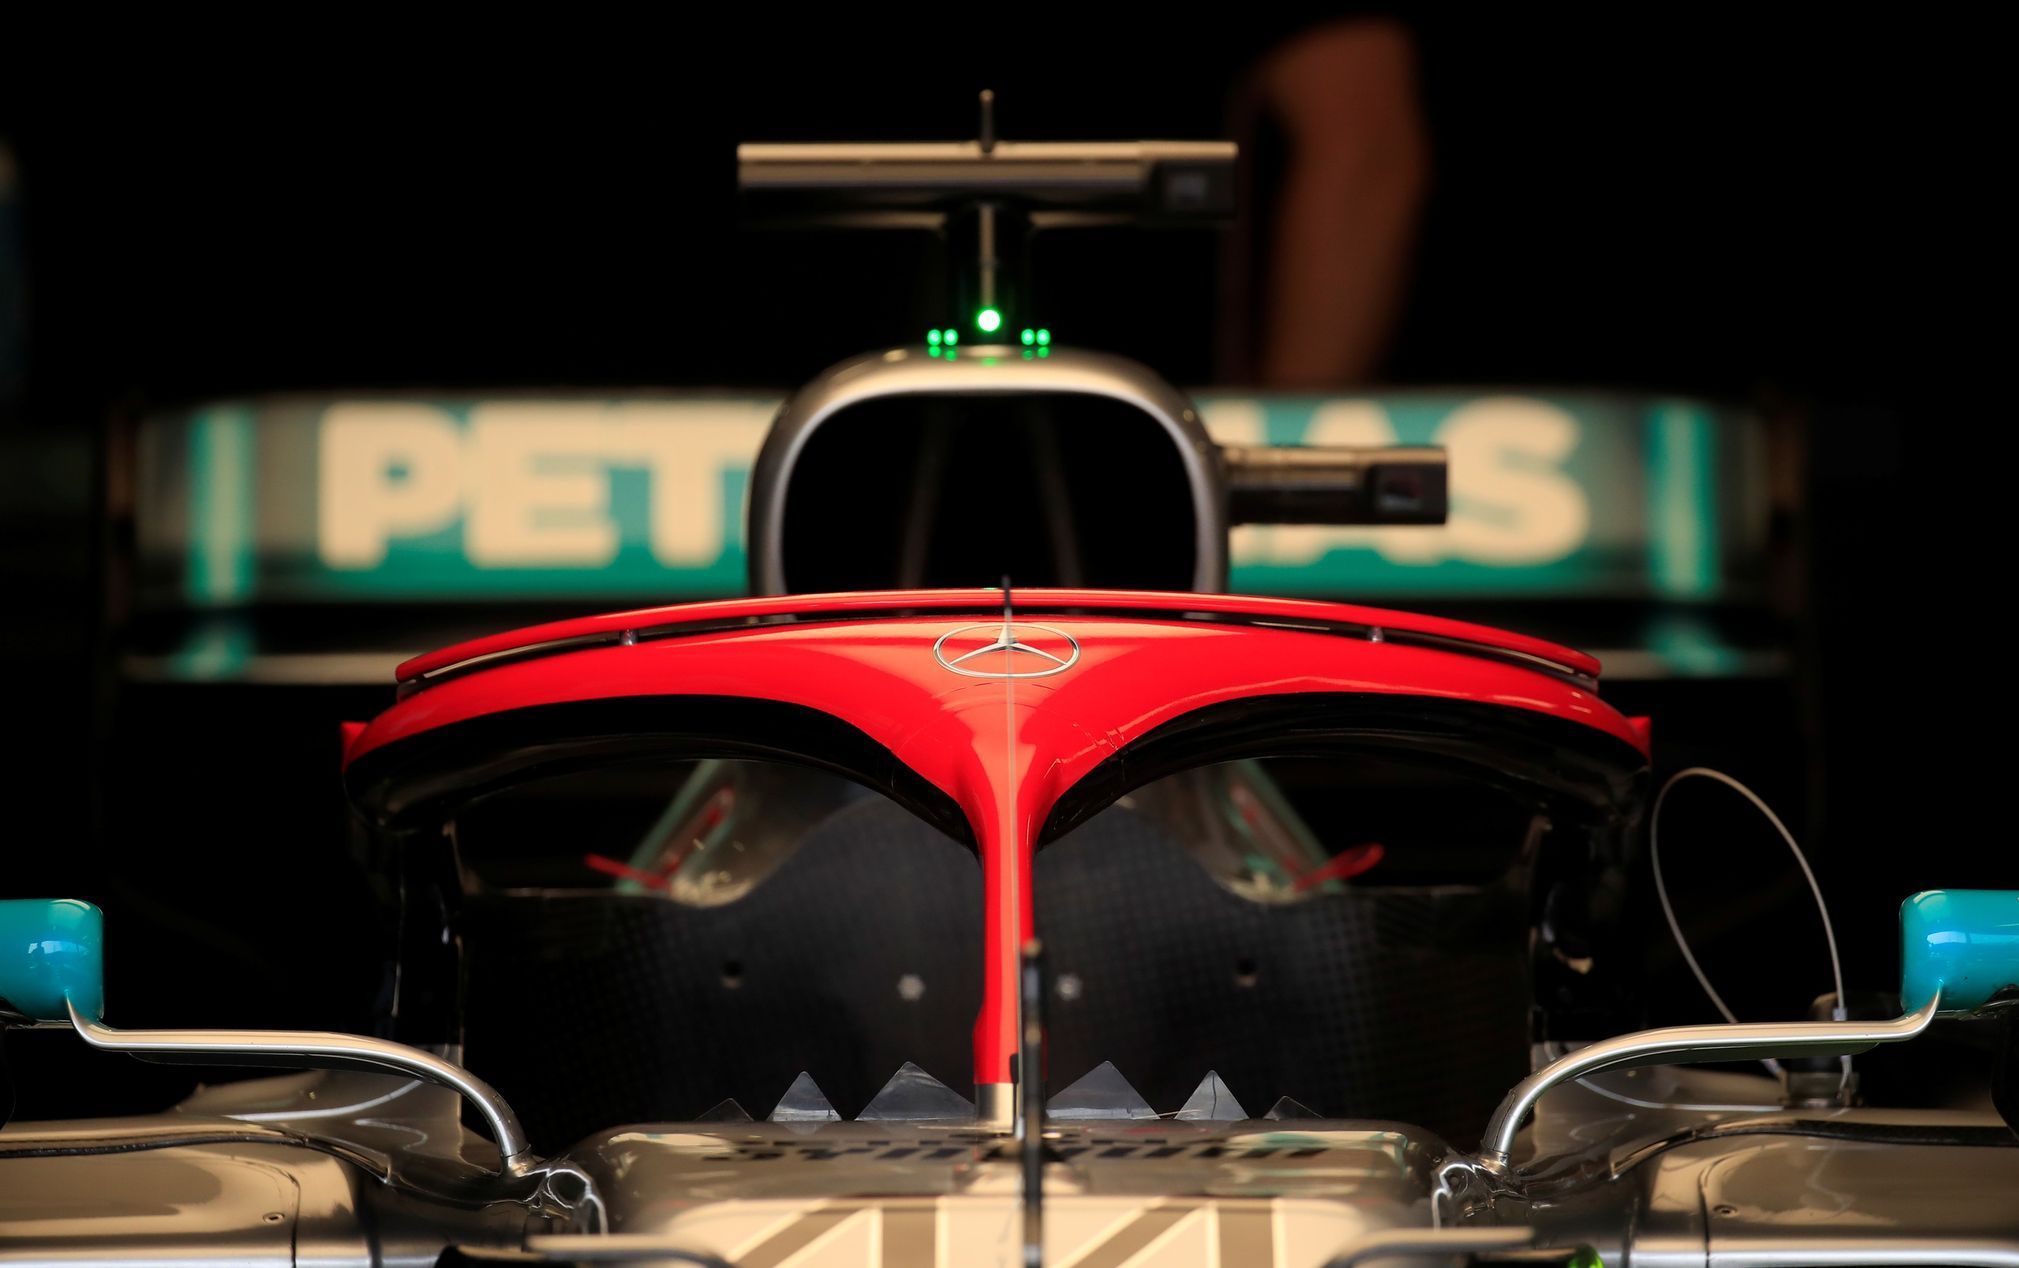 Vzpomínka na NIkiho Laudu při Velké ceně formule 1 v Monaku červeným ochranným rámem halo na Mercedesu